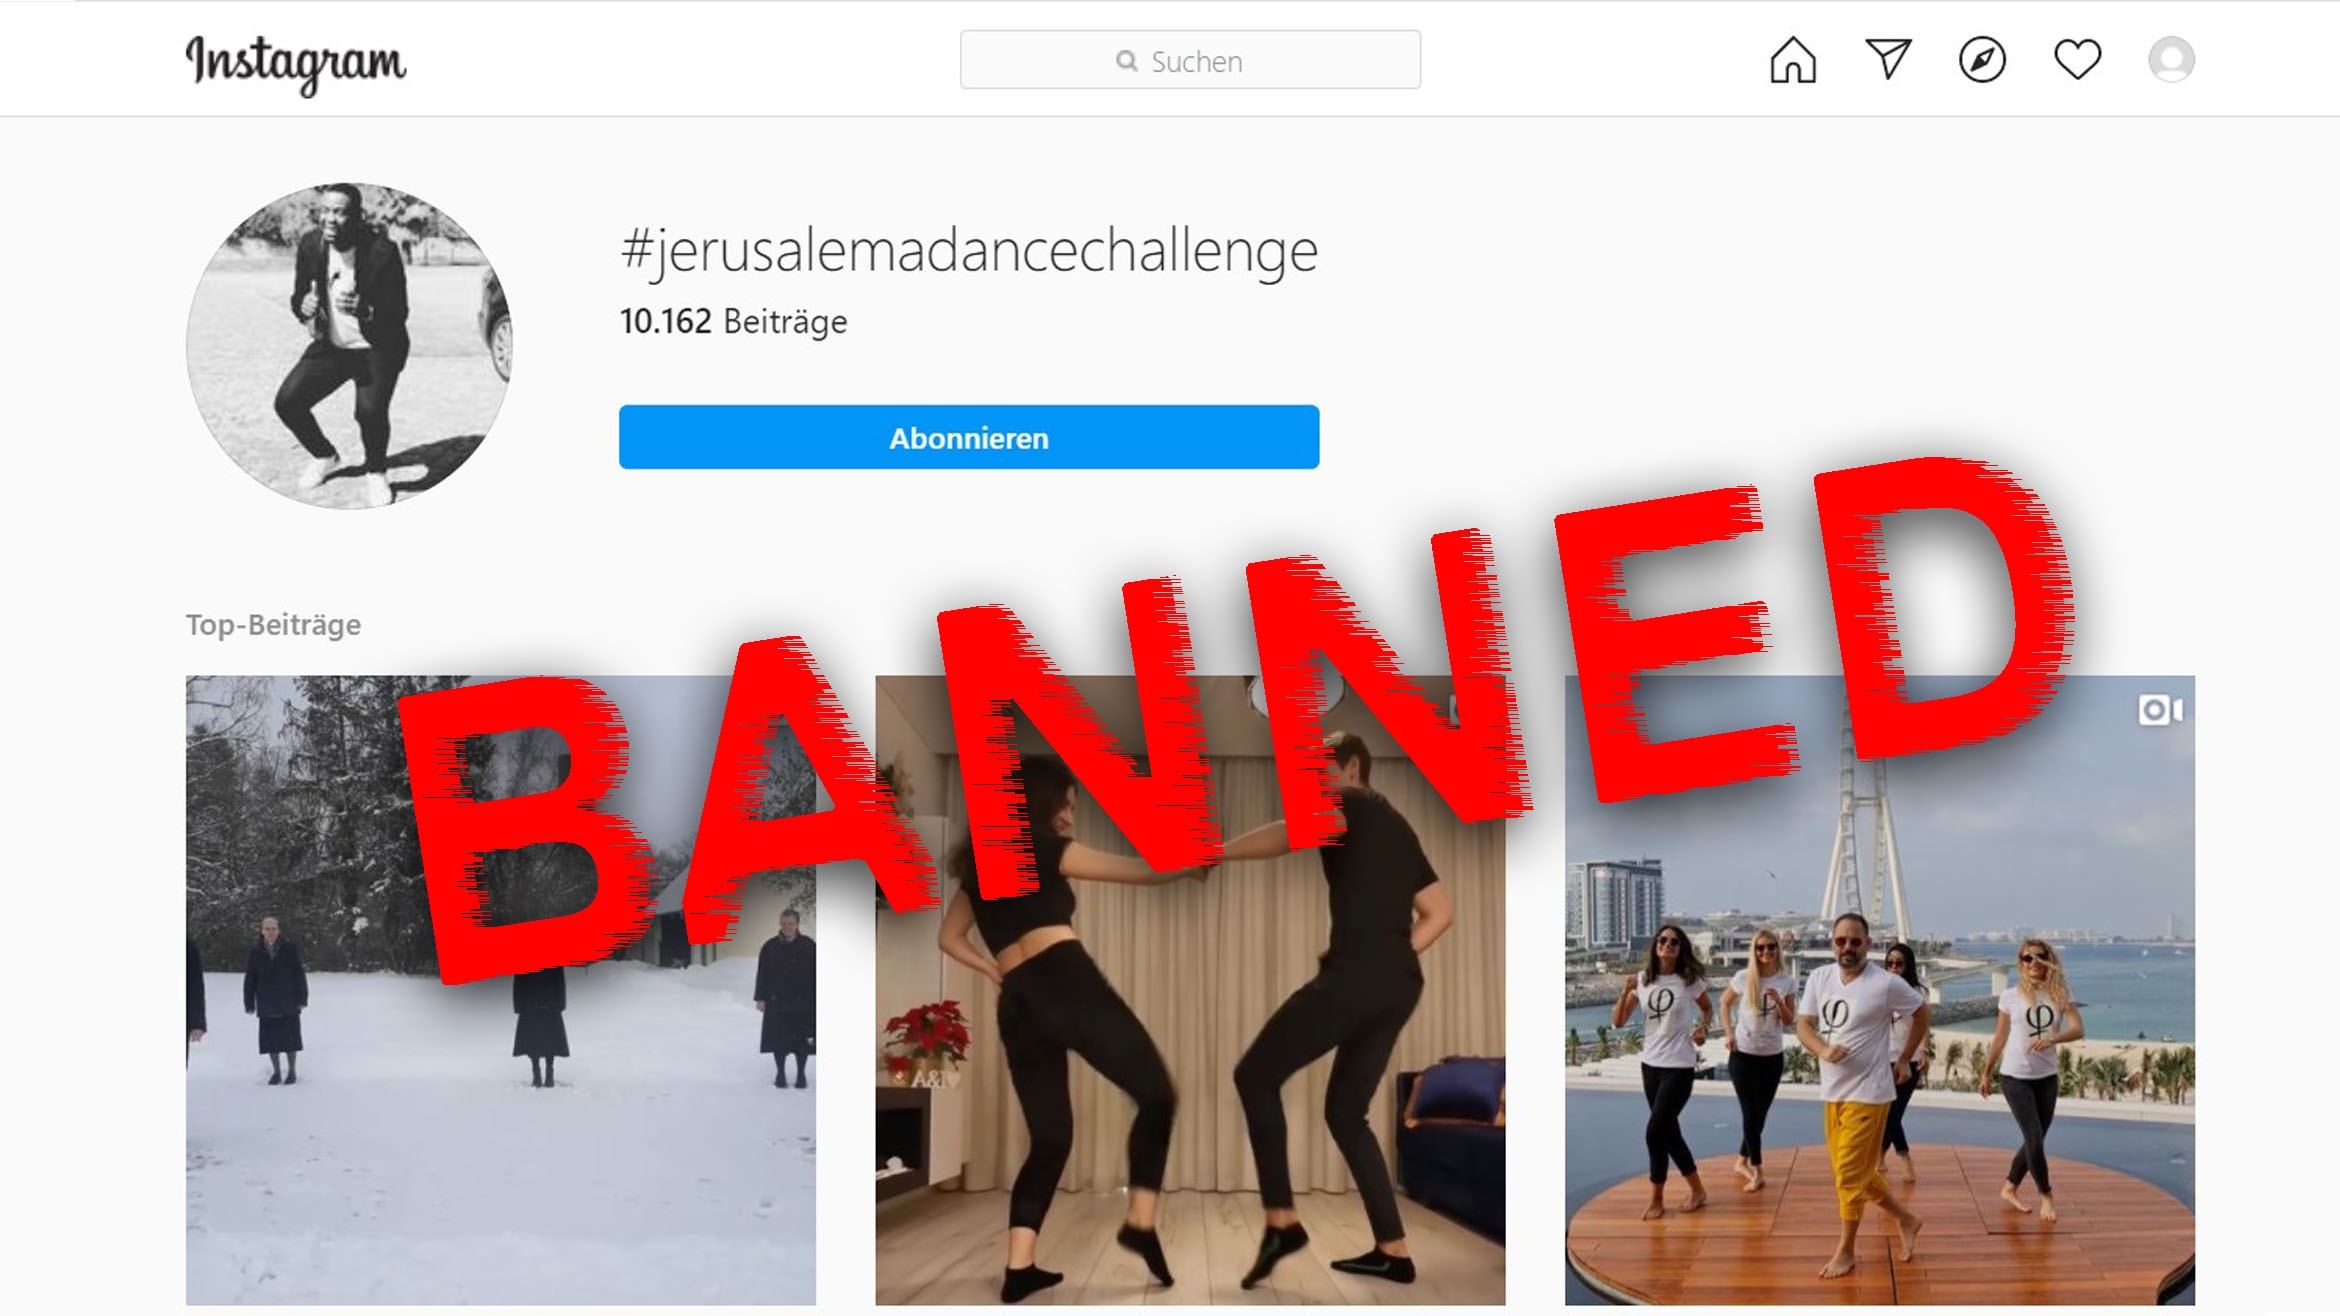 Warner Music geht gegen "Jerusalema"-Tänzer vor –